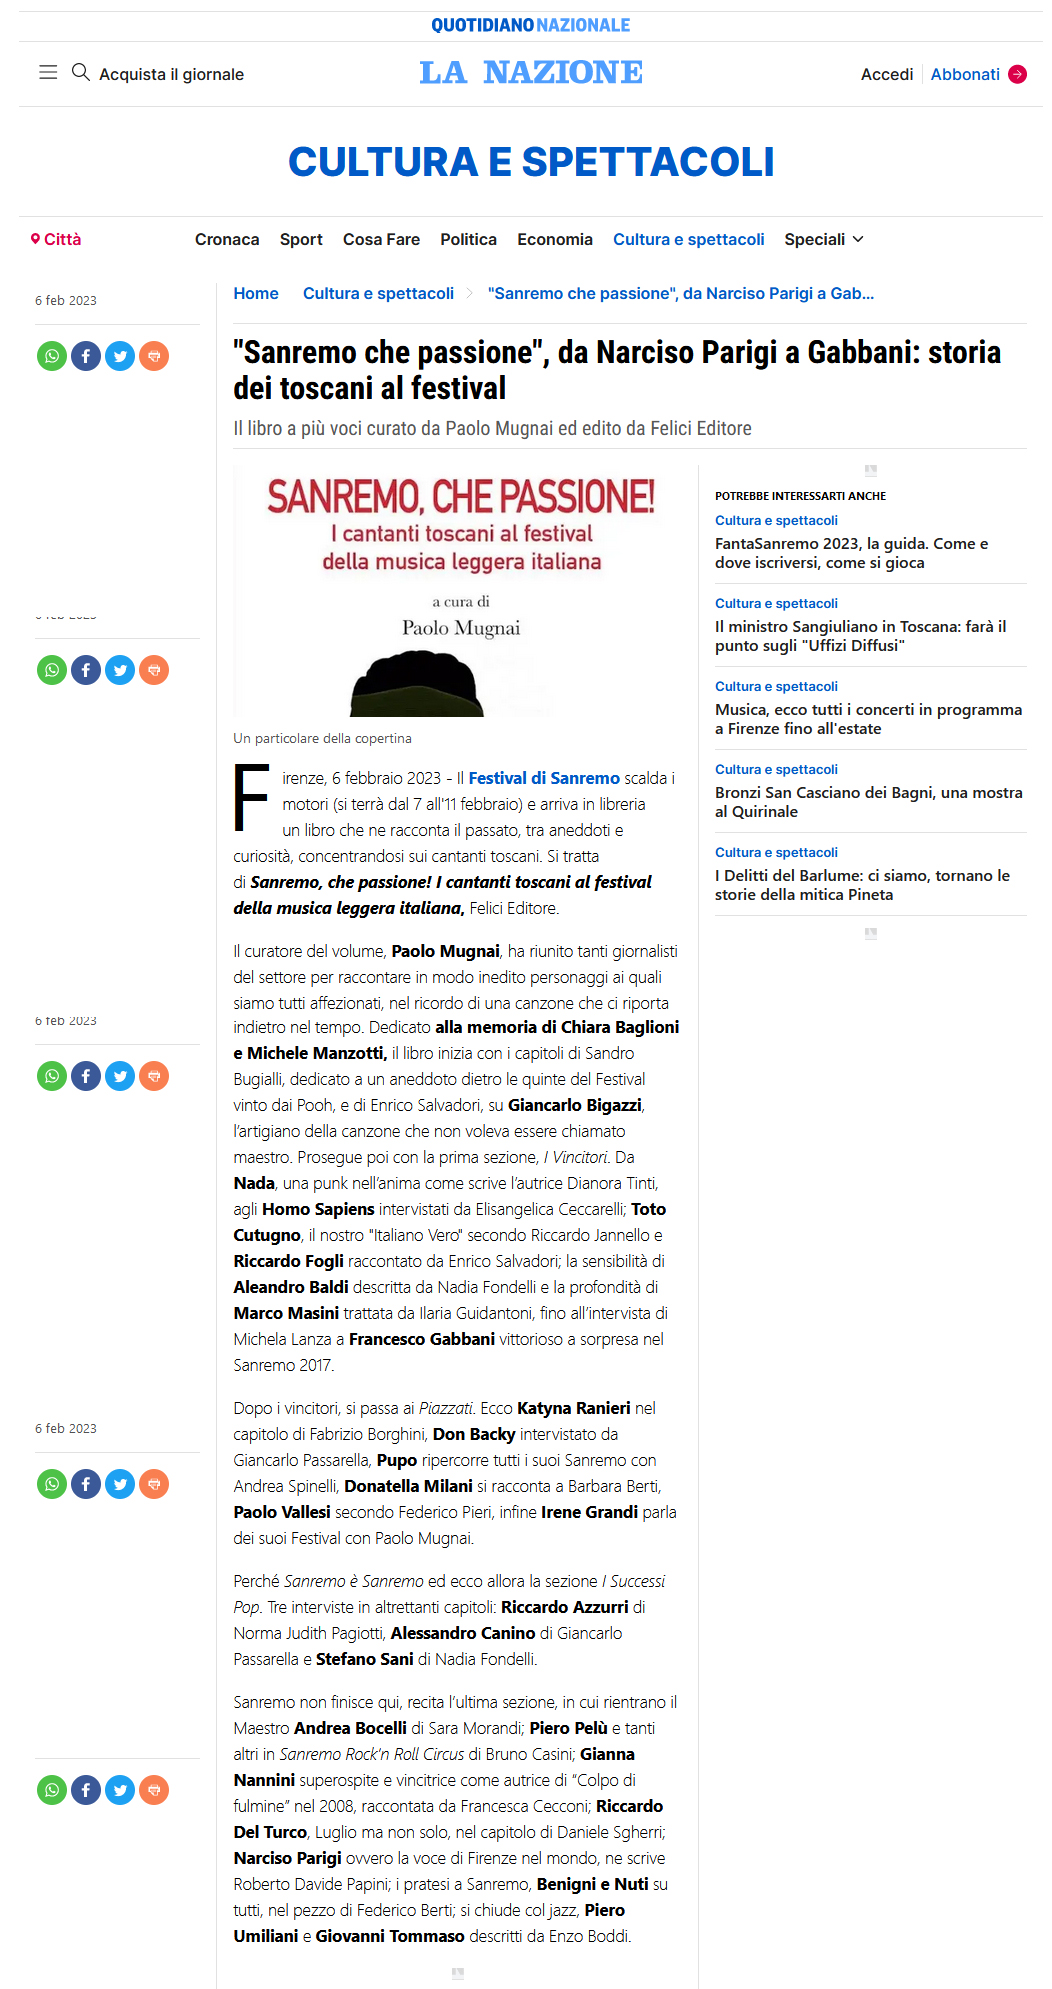 “Sanremo che passione”, da Narciso Parigi a Gabbani: storia dei toscani al Festival